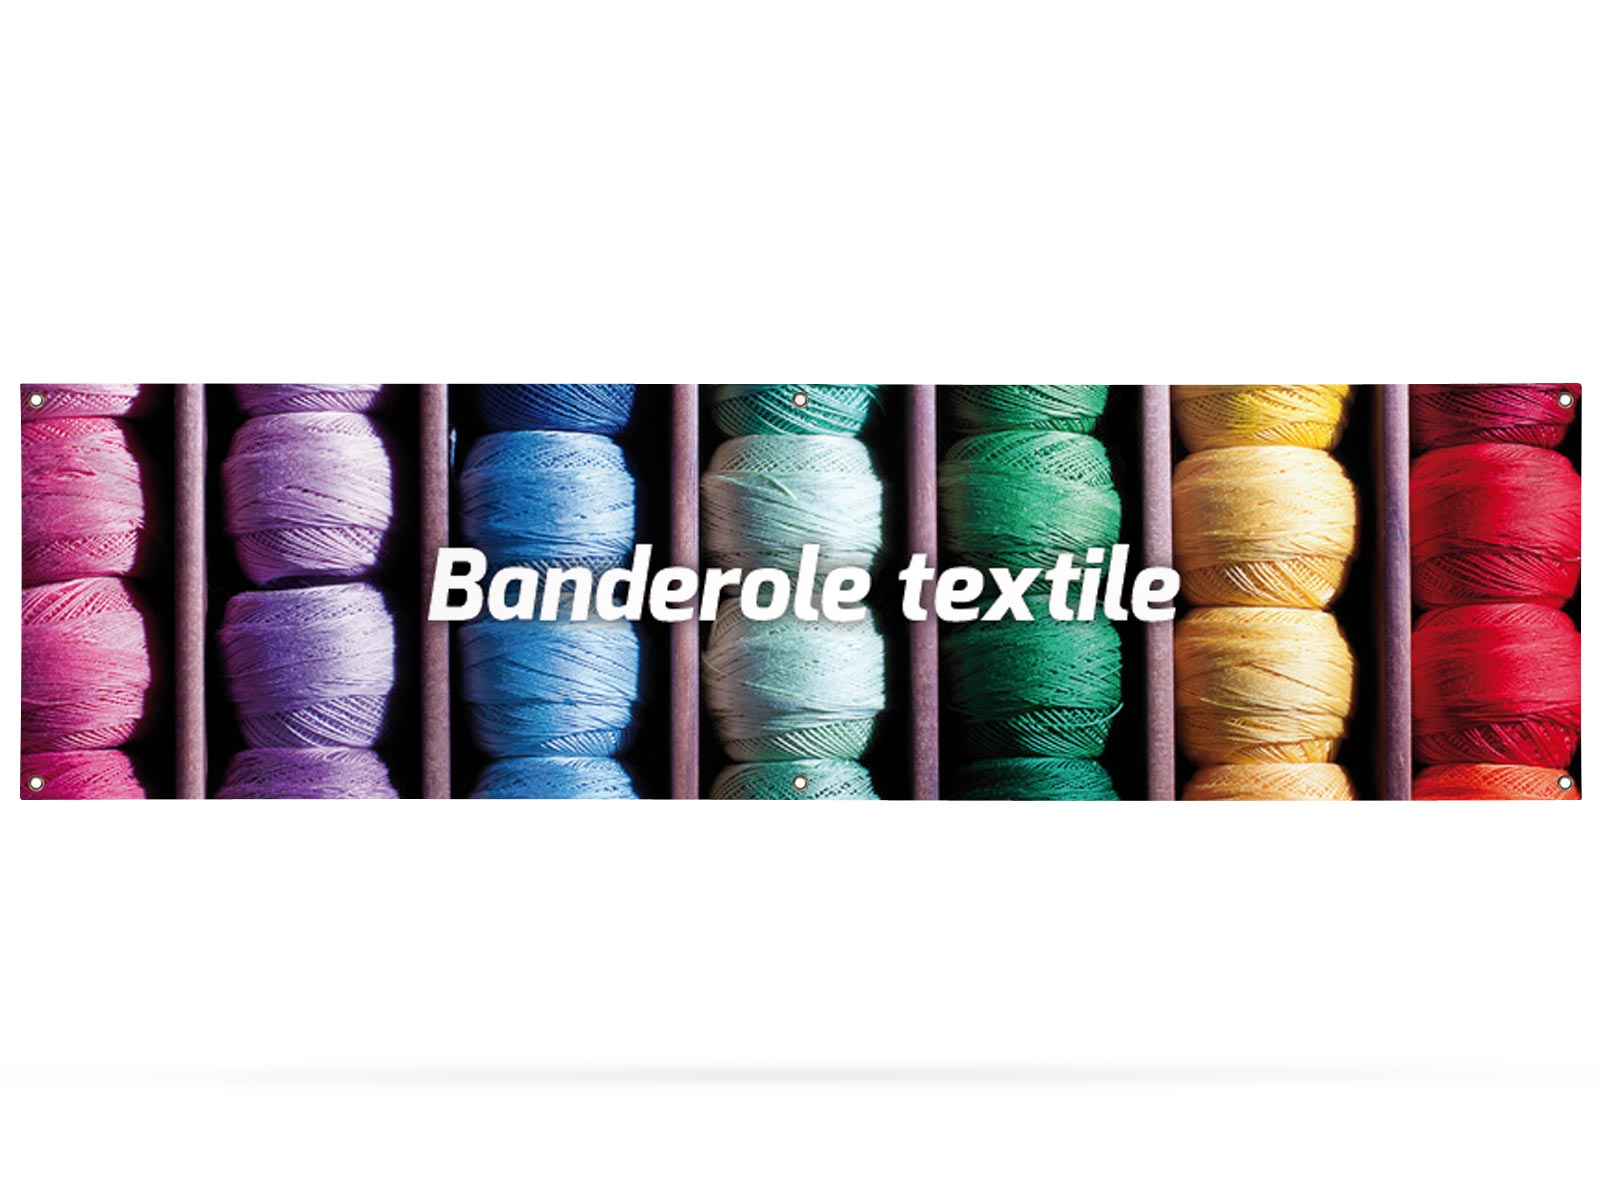 Banderole textile 300 x 80 cm